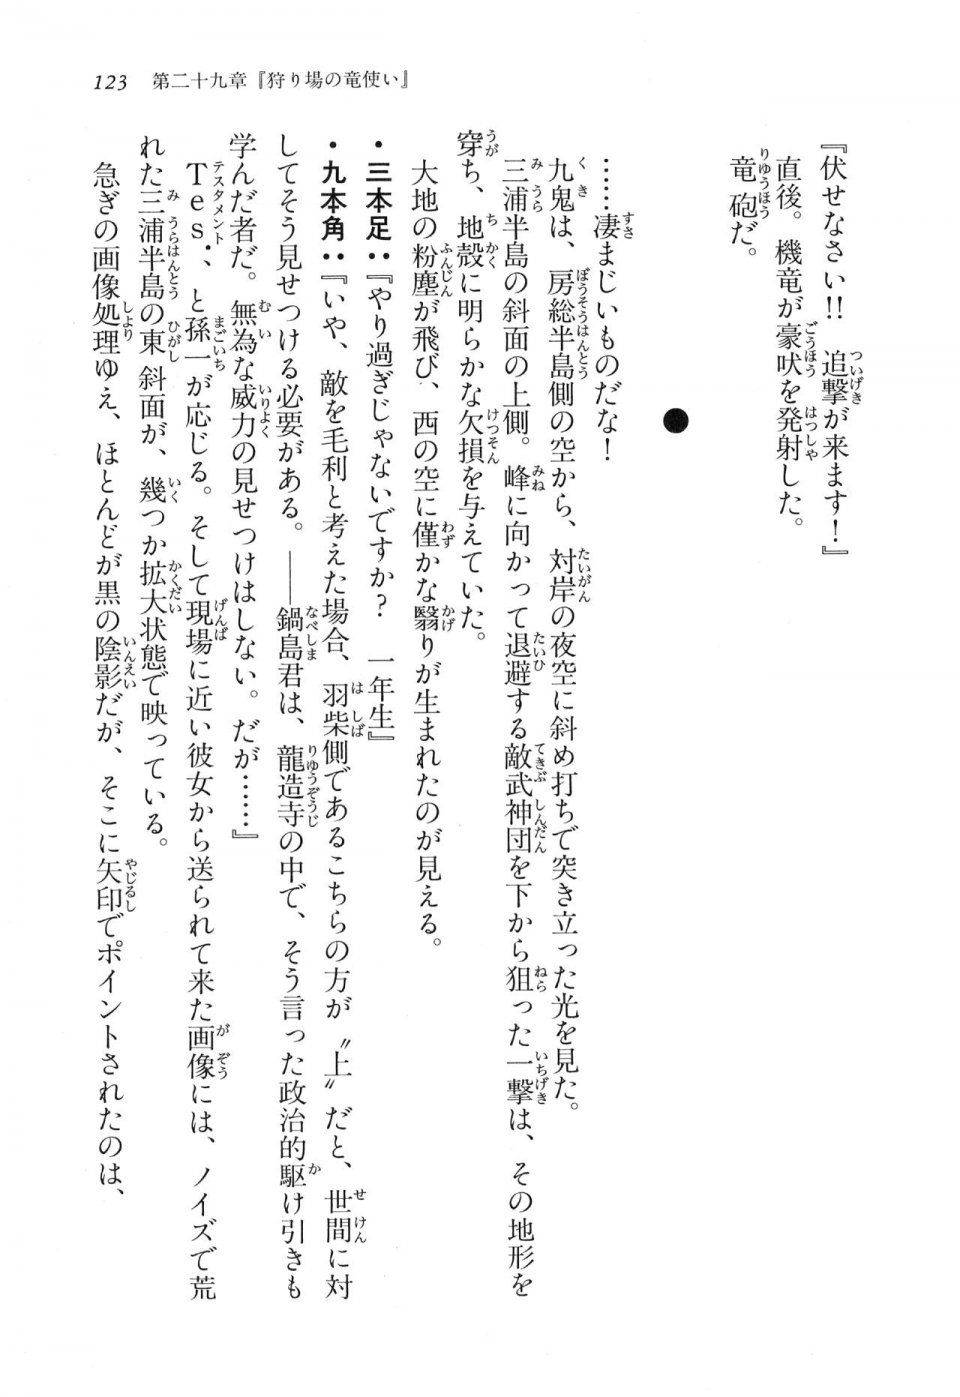 Kyoukai Senjou no Horizon LN Vol 17(7B) - Photo #123